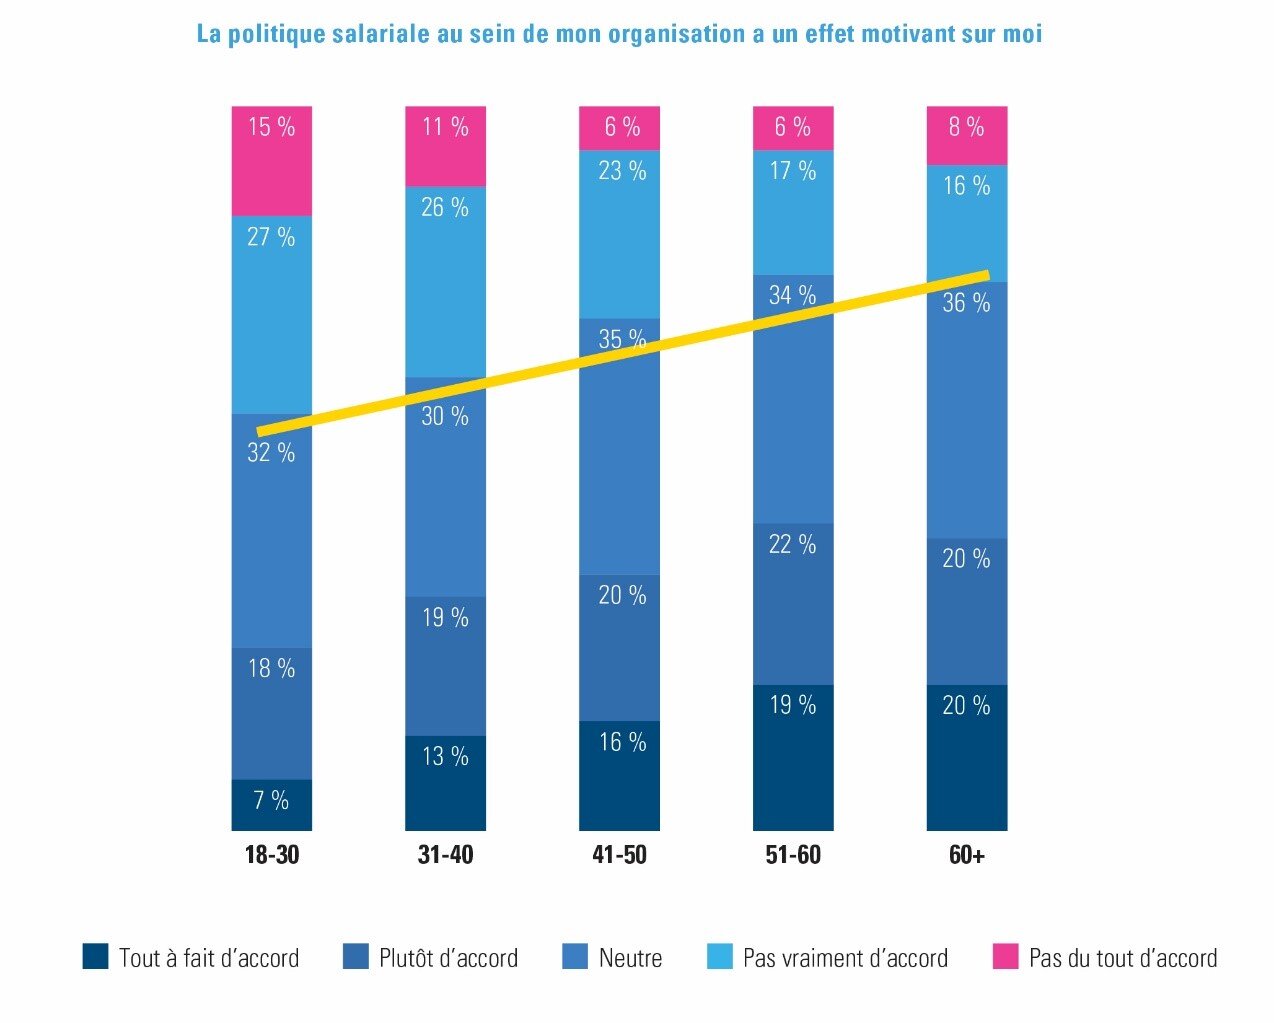 Appréciation de la politique salariale par tranche d’âge, de « tout à fait d’accord » (rouge) à « pas du tout d’accord » (bleu foncé) – Enquête 2021